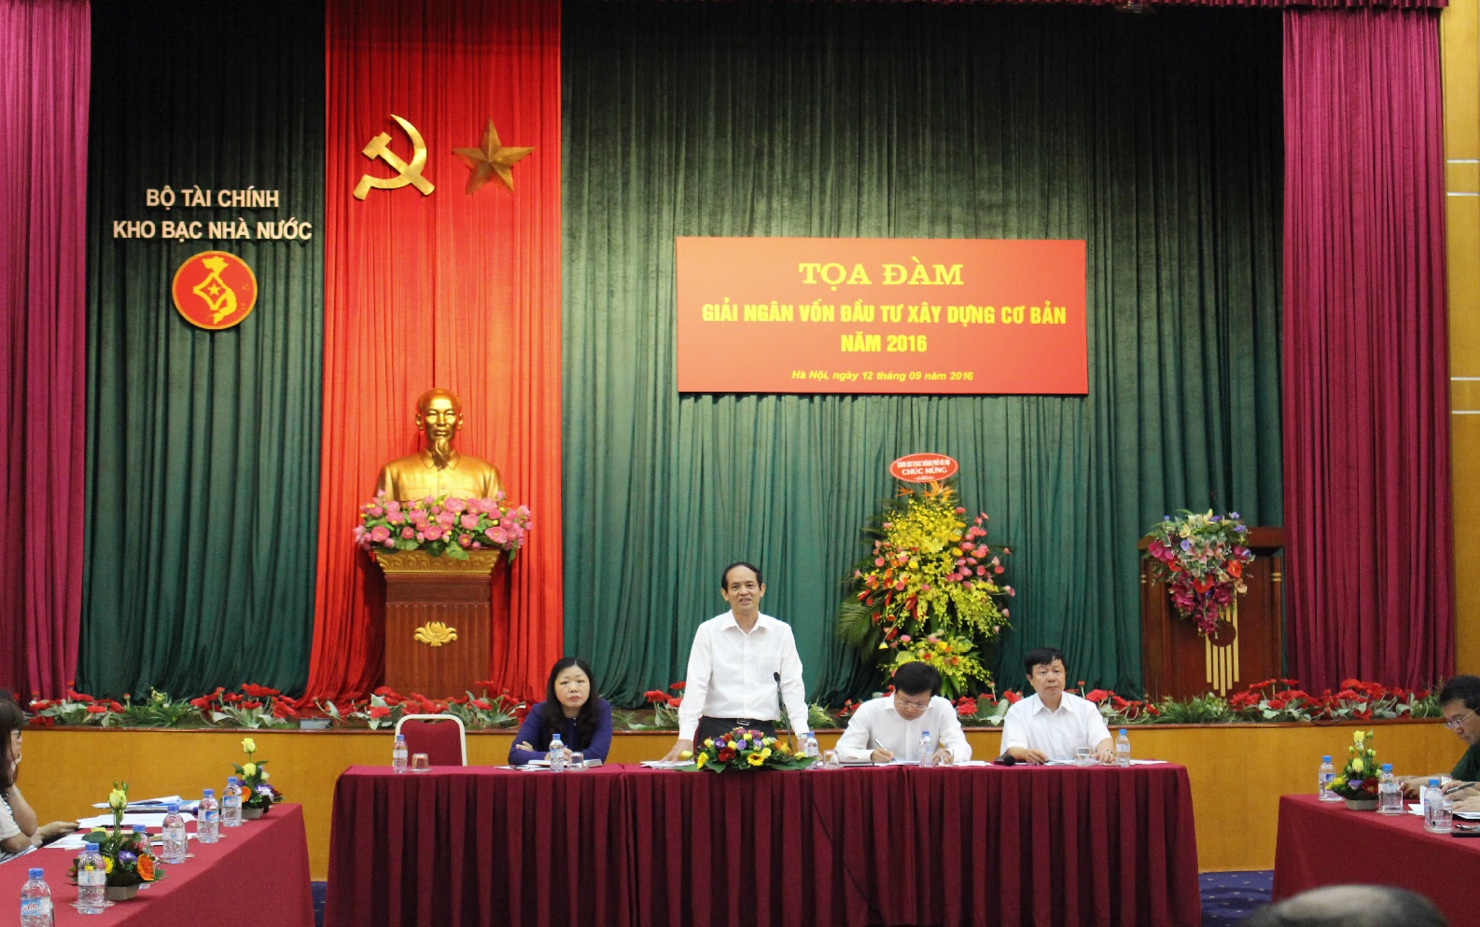 Đ/c Nguyễn Việt Hồng – PTGĐ KBNN phát biểu tại buổi tọa đàm